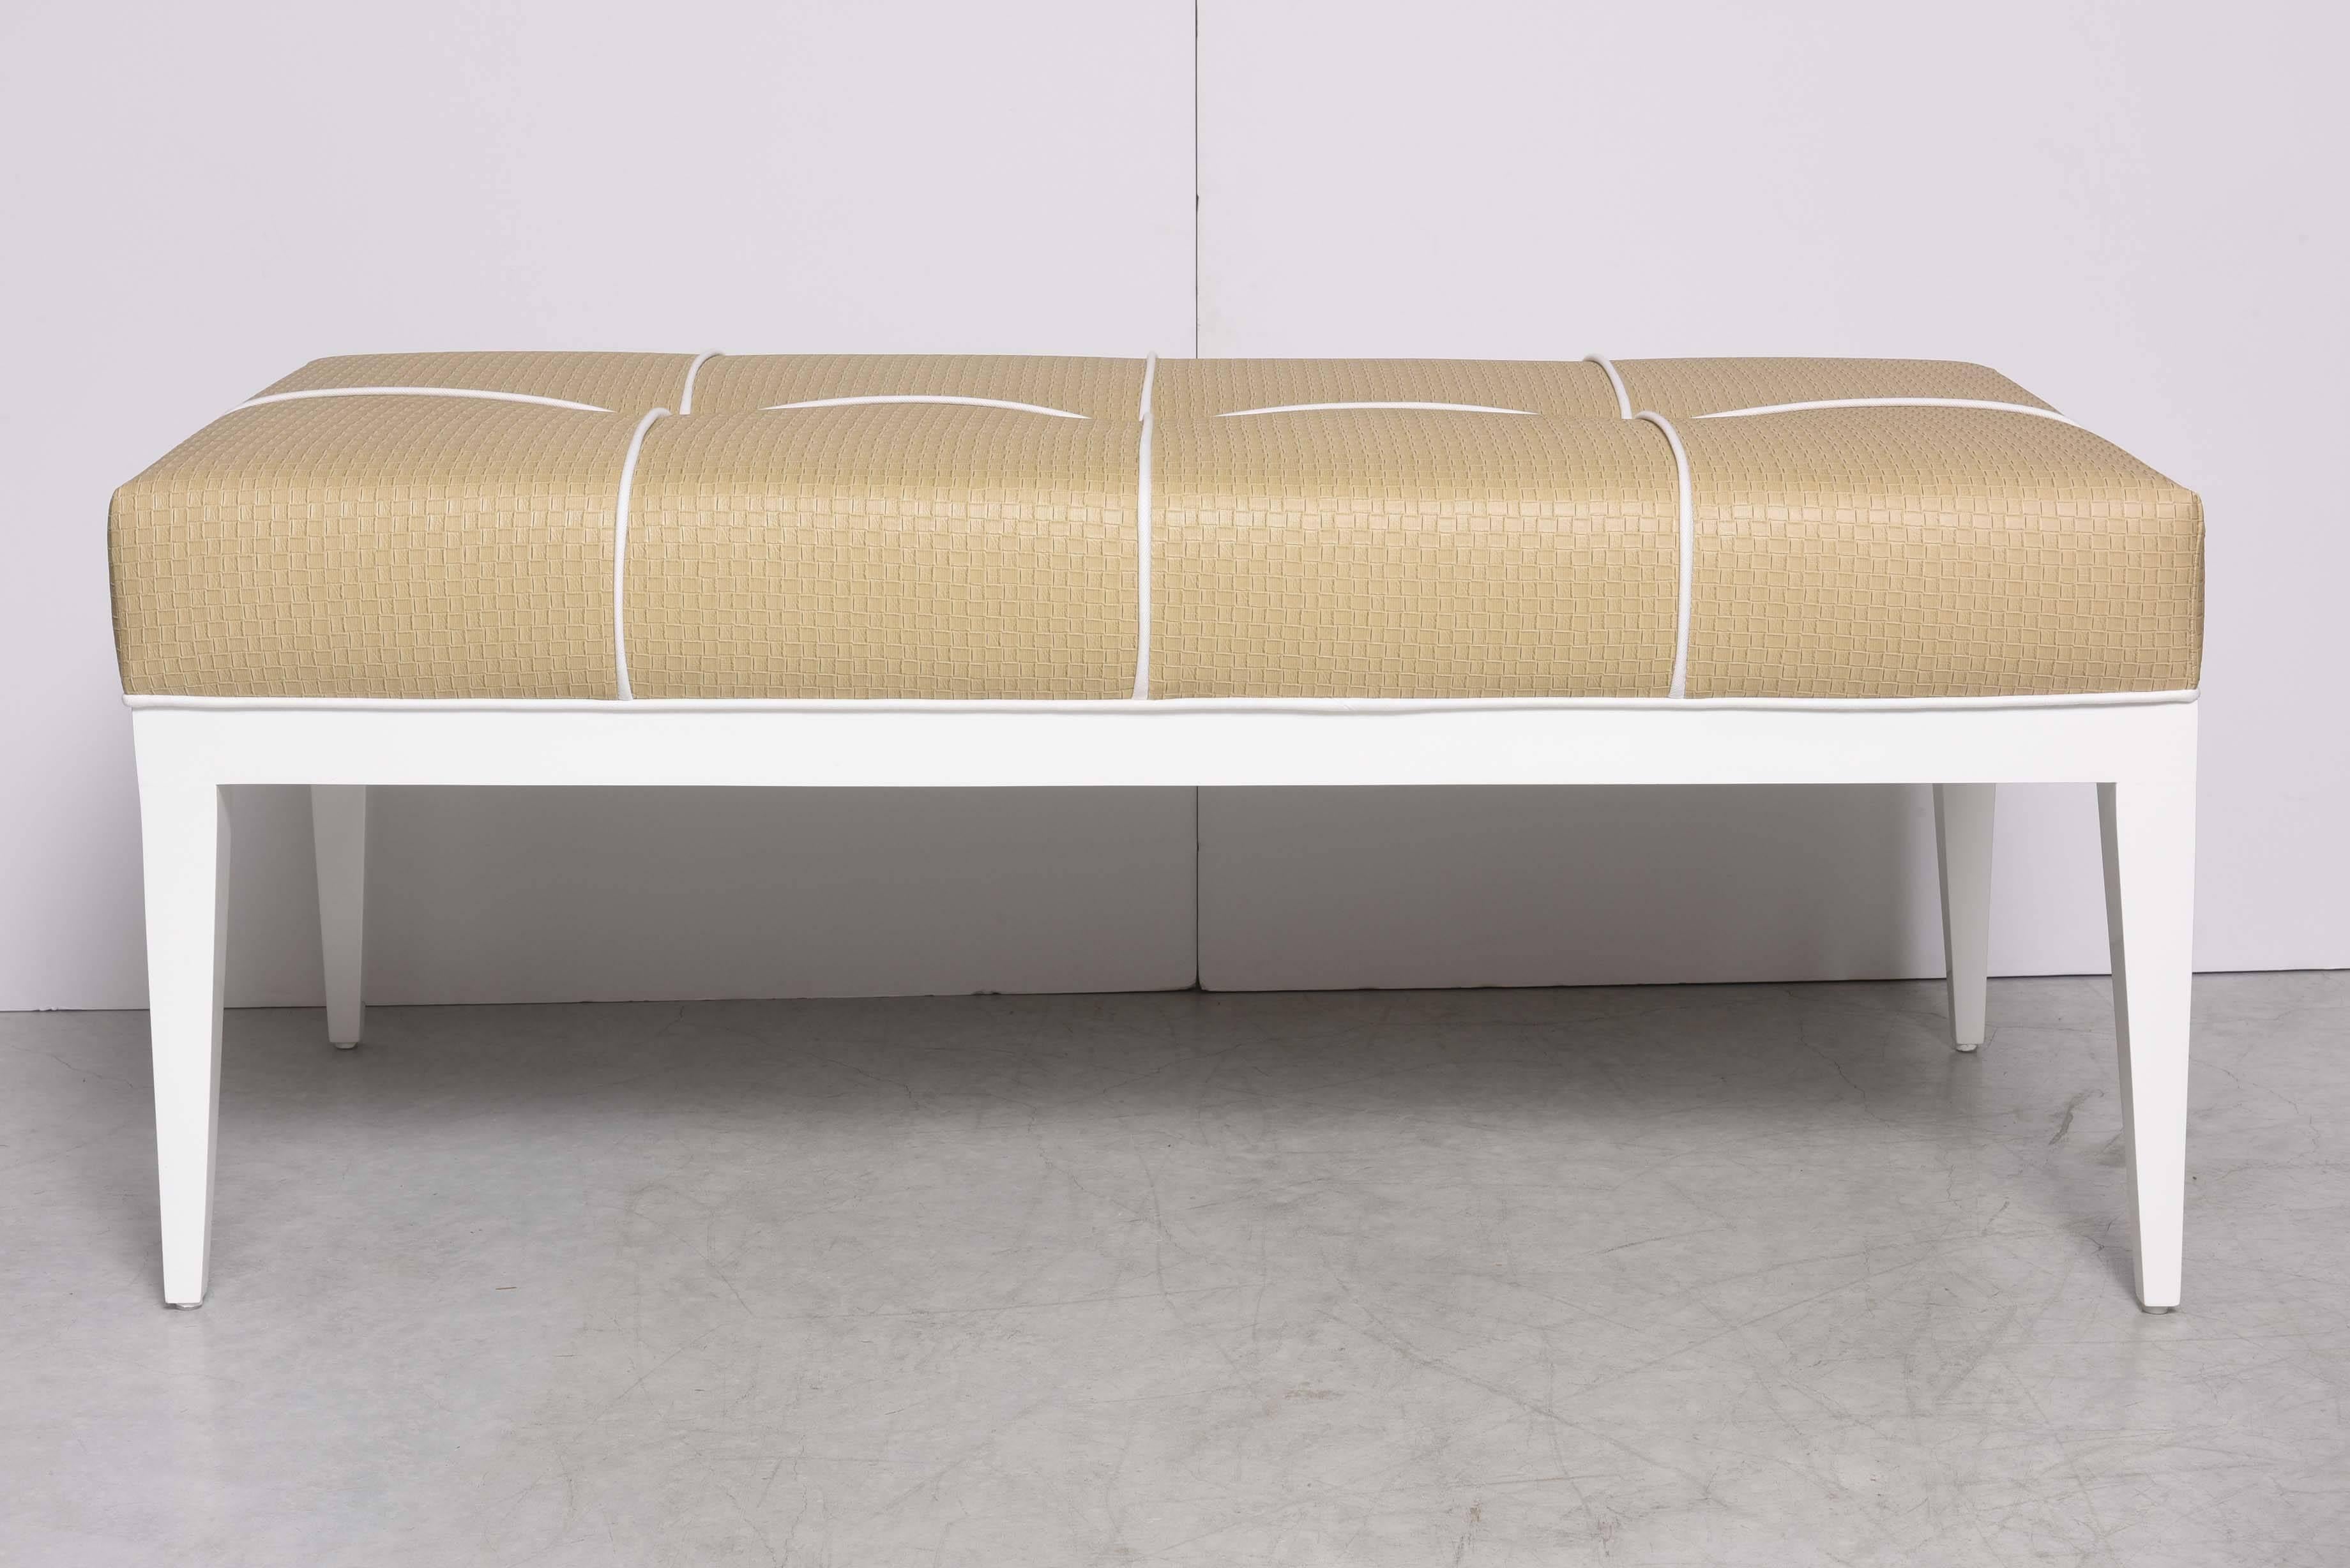 Hollywood Regency SALE! SALE! SALE! Studio-Built Bedroom Bench DESIGNED BY SUSANER beche, white 